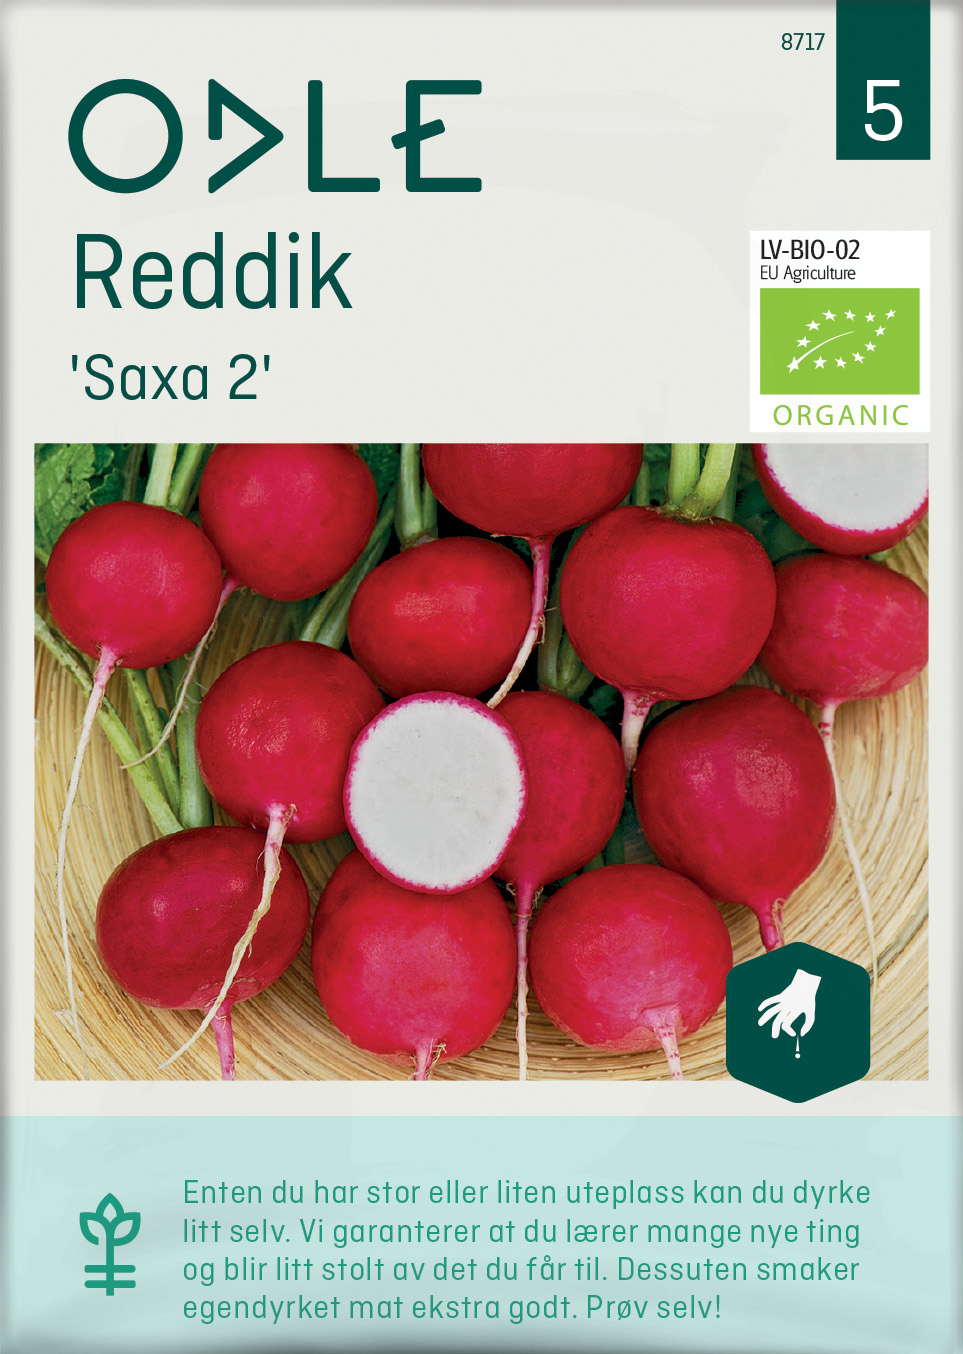 Odle 'Saxa 2' reddik frø